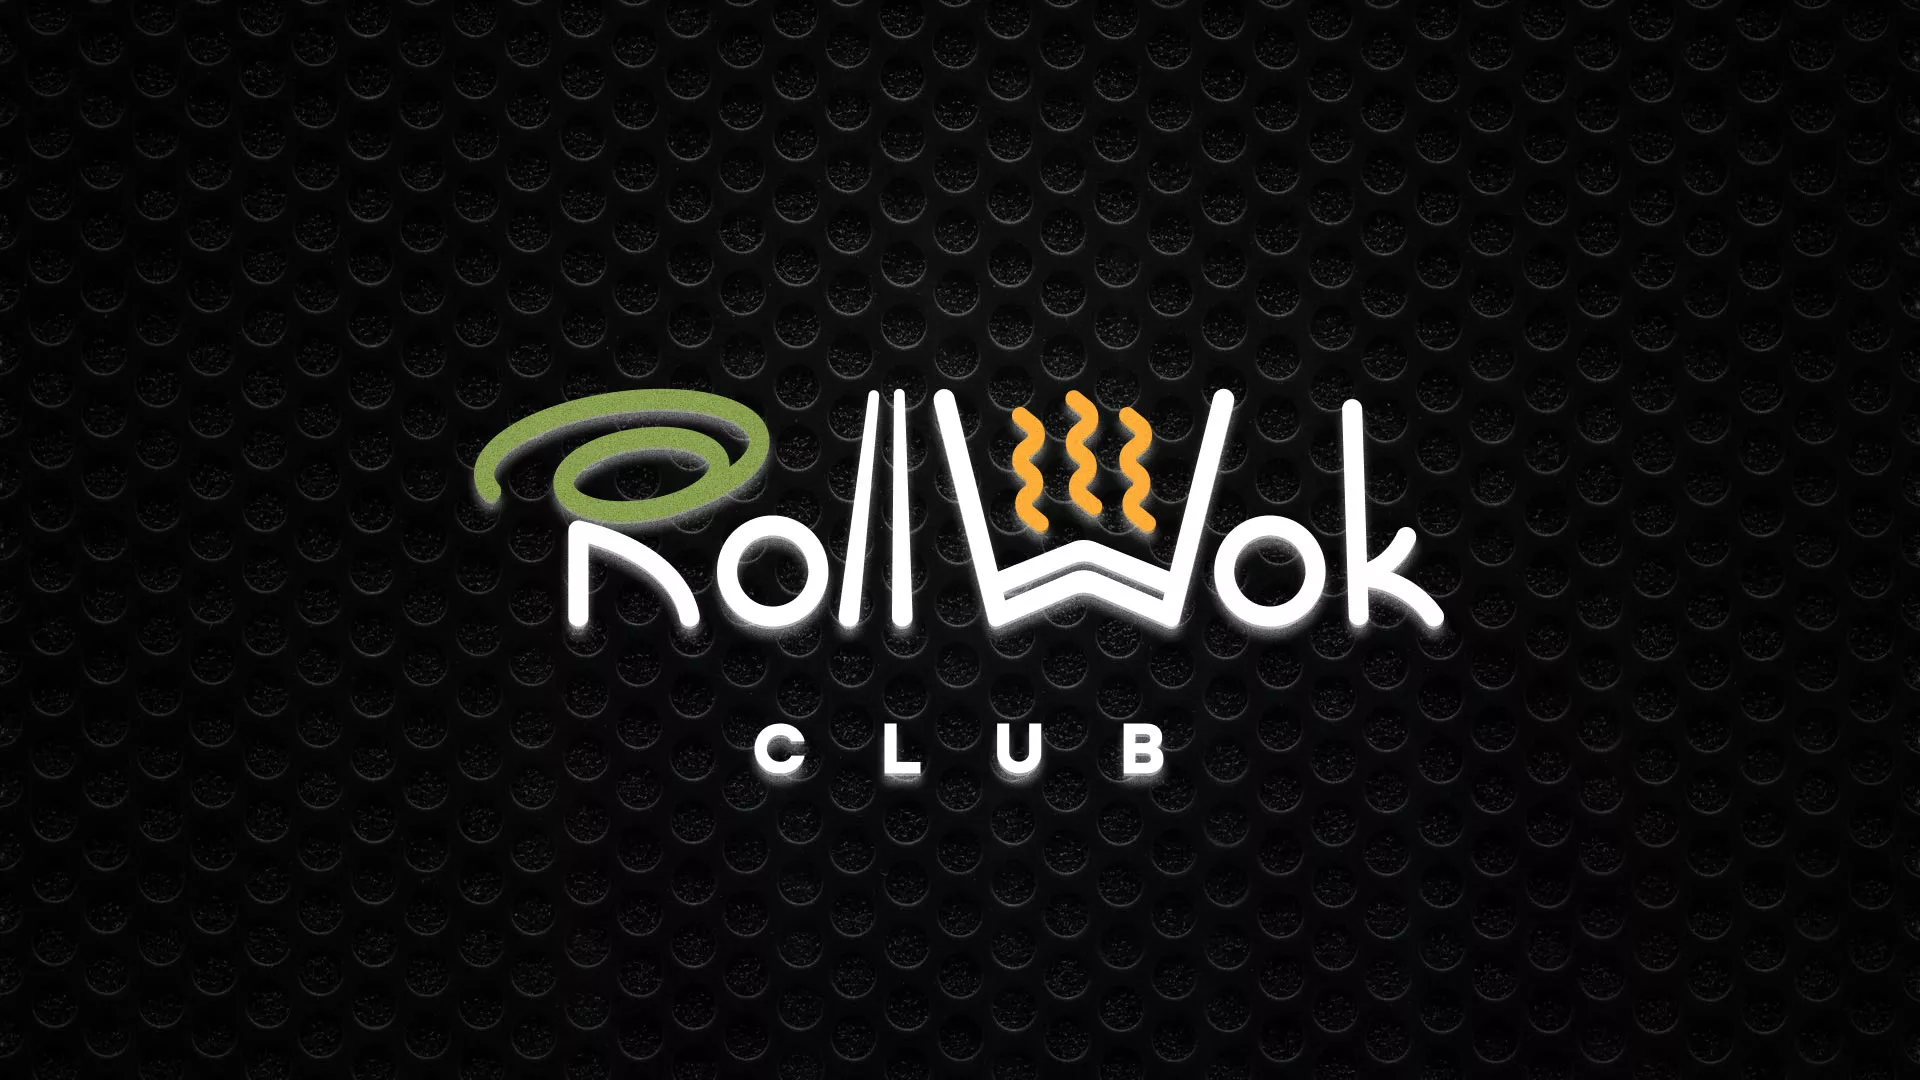 Брендирование торговых точек суши-бара «Roll Wok Club» в Демидове